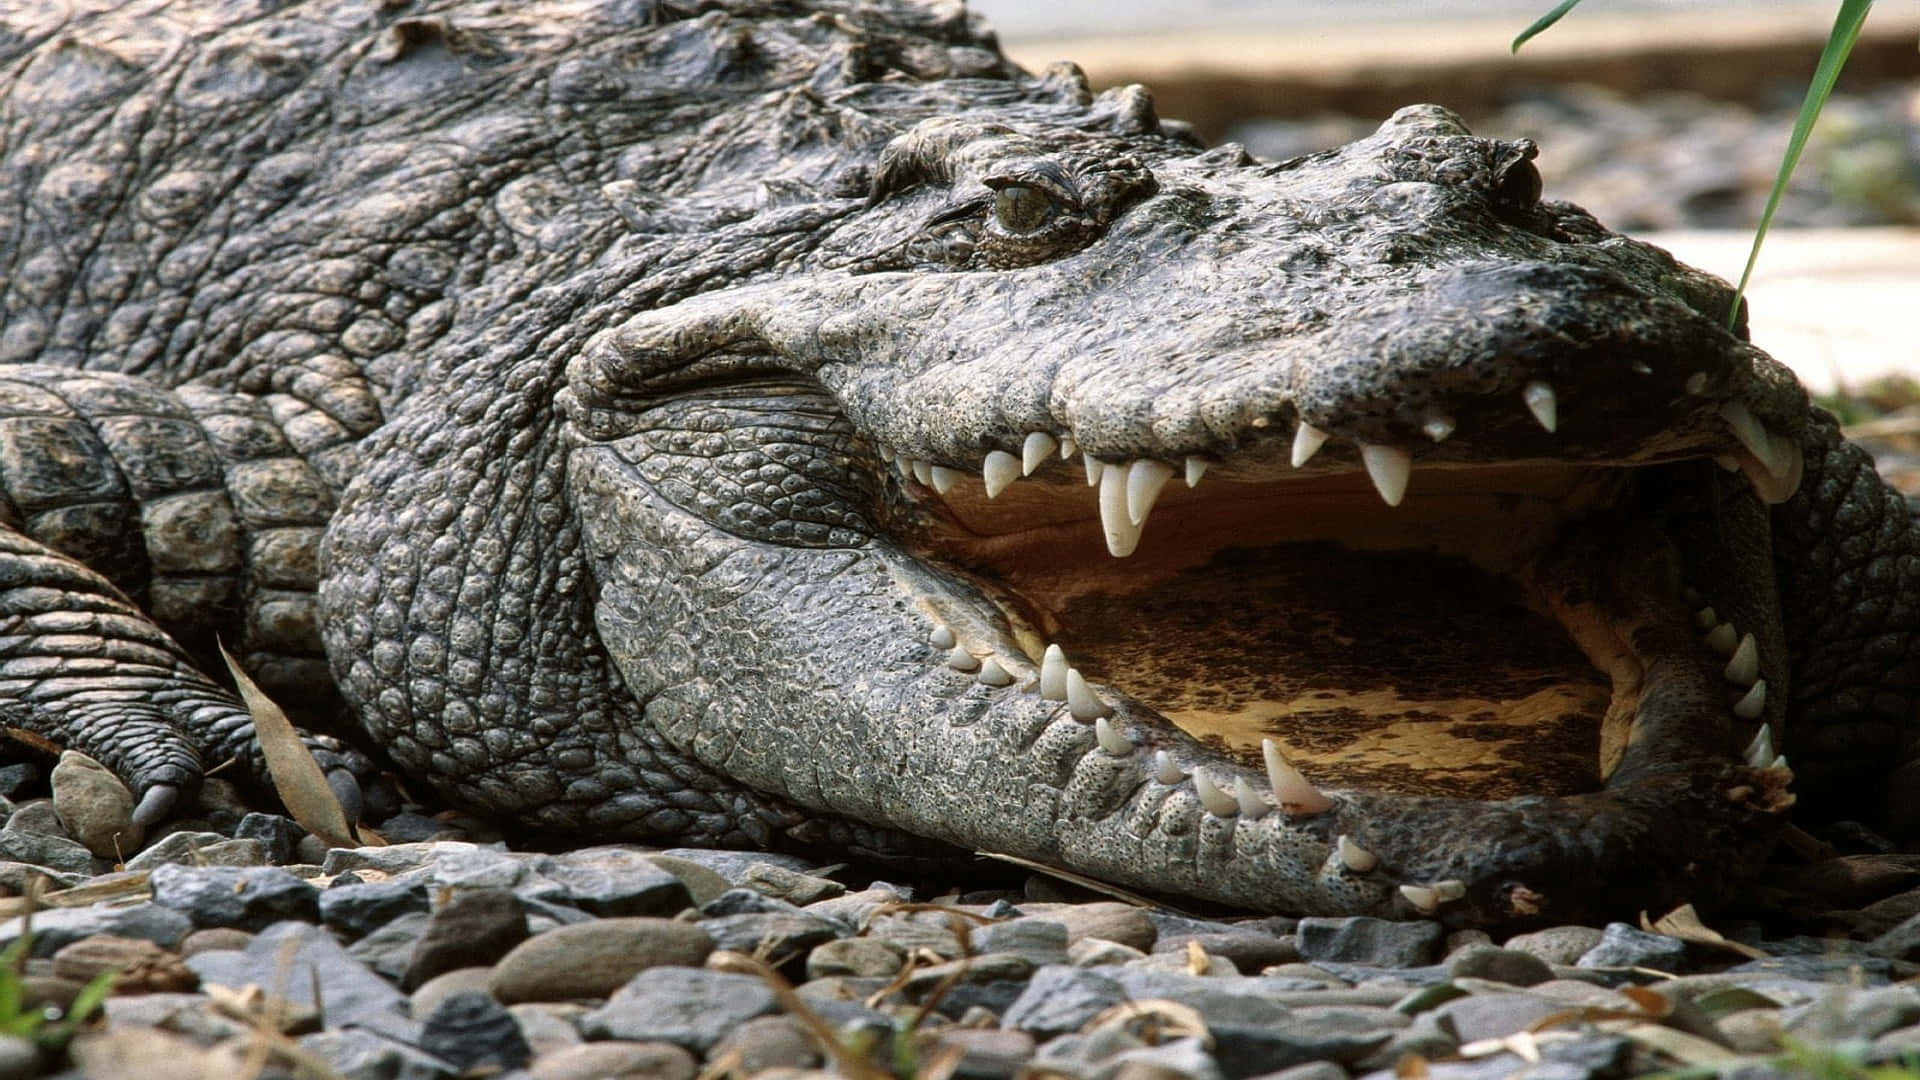 Enbildtext Av En Alligator I Dess Naturliga Miljö